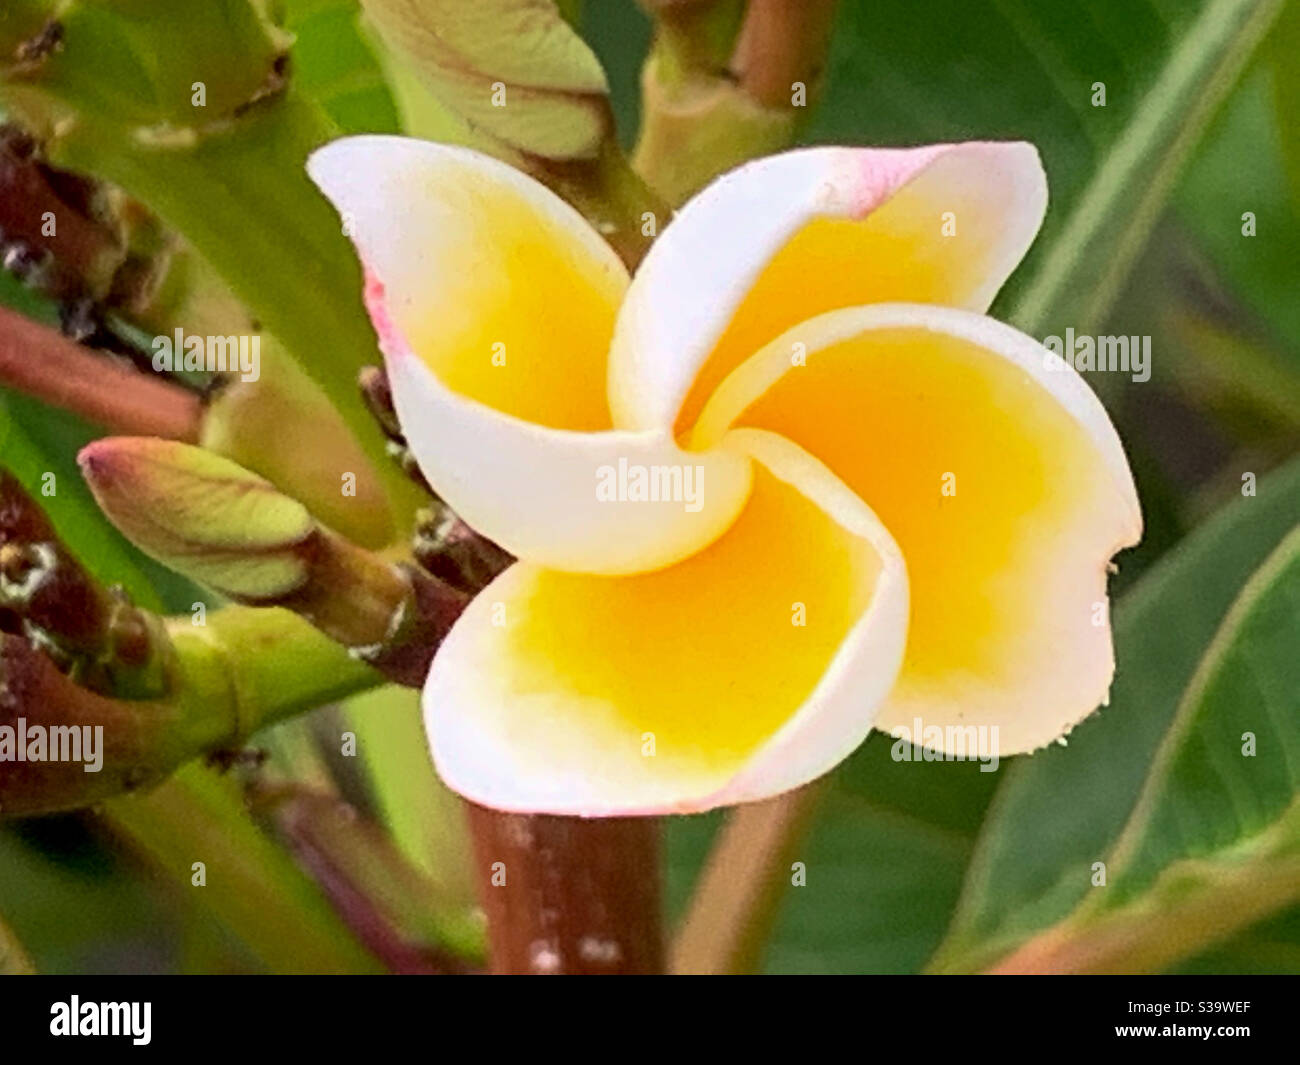 Splendido profumo cremoso giallo e bianco Frangipani fiore assomiglia una ruota dentata Foto Stock